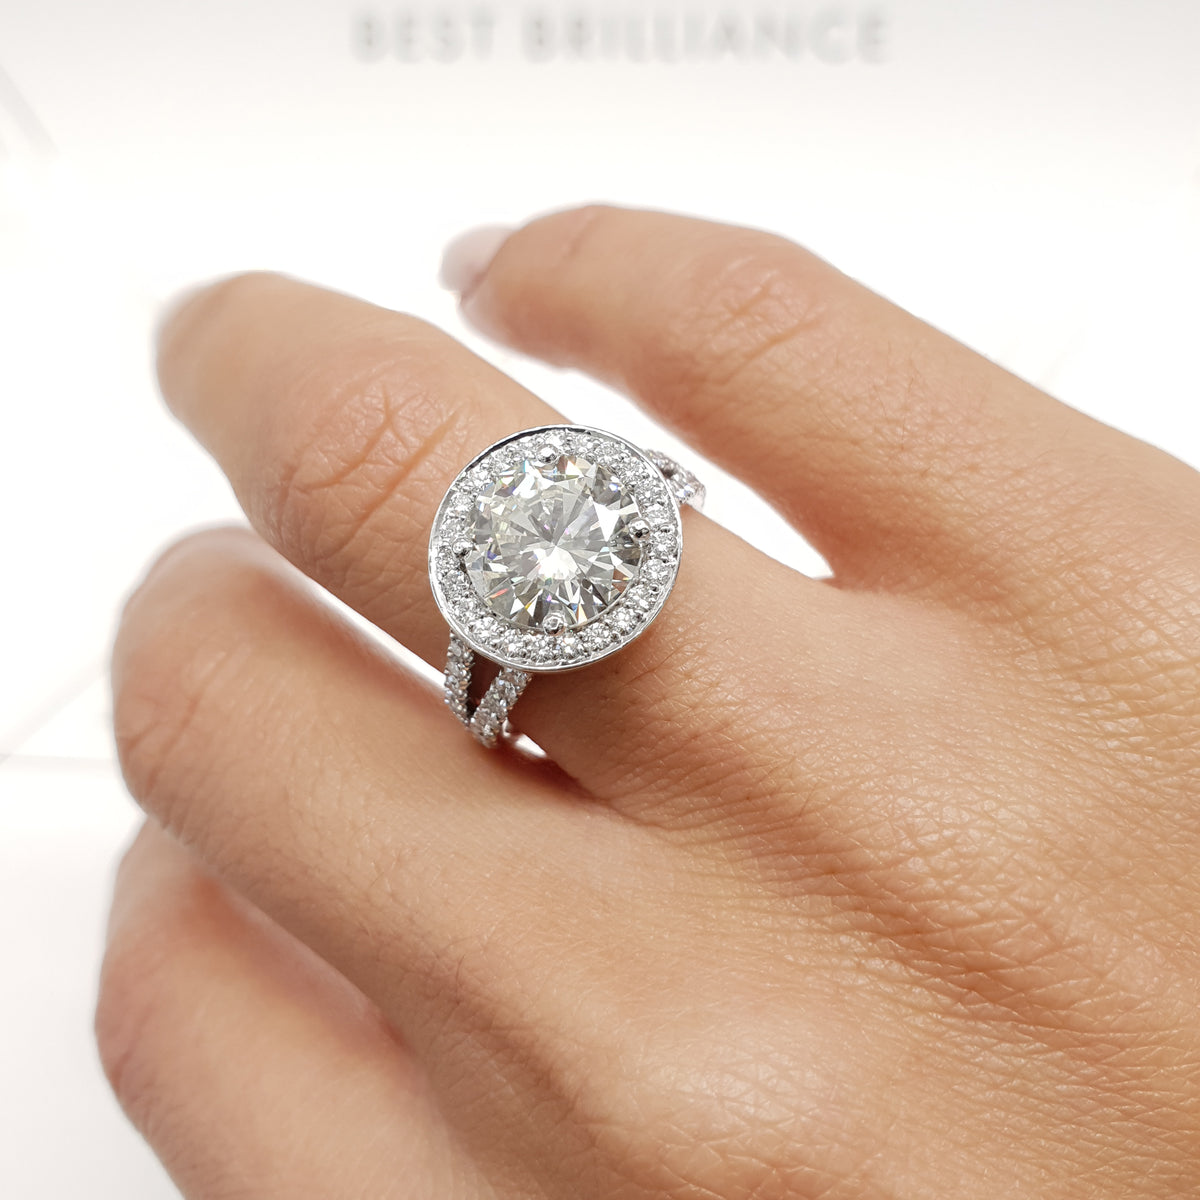 The Camilla Engagement Ring - 2.75 CARAT ROUND BRILLIANT CUT HALO Diam